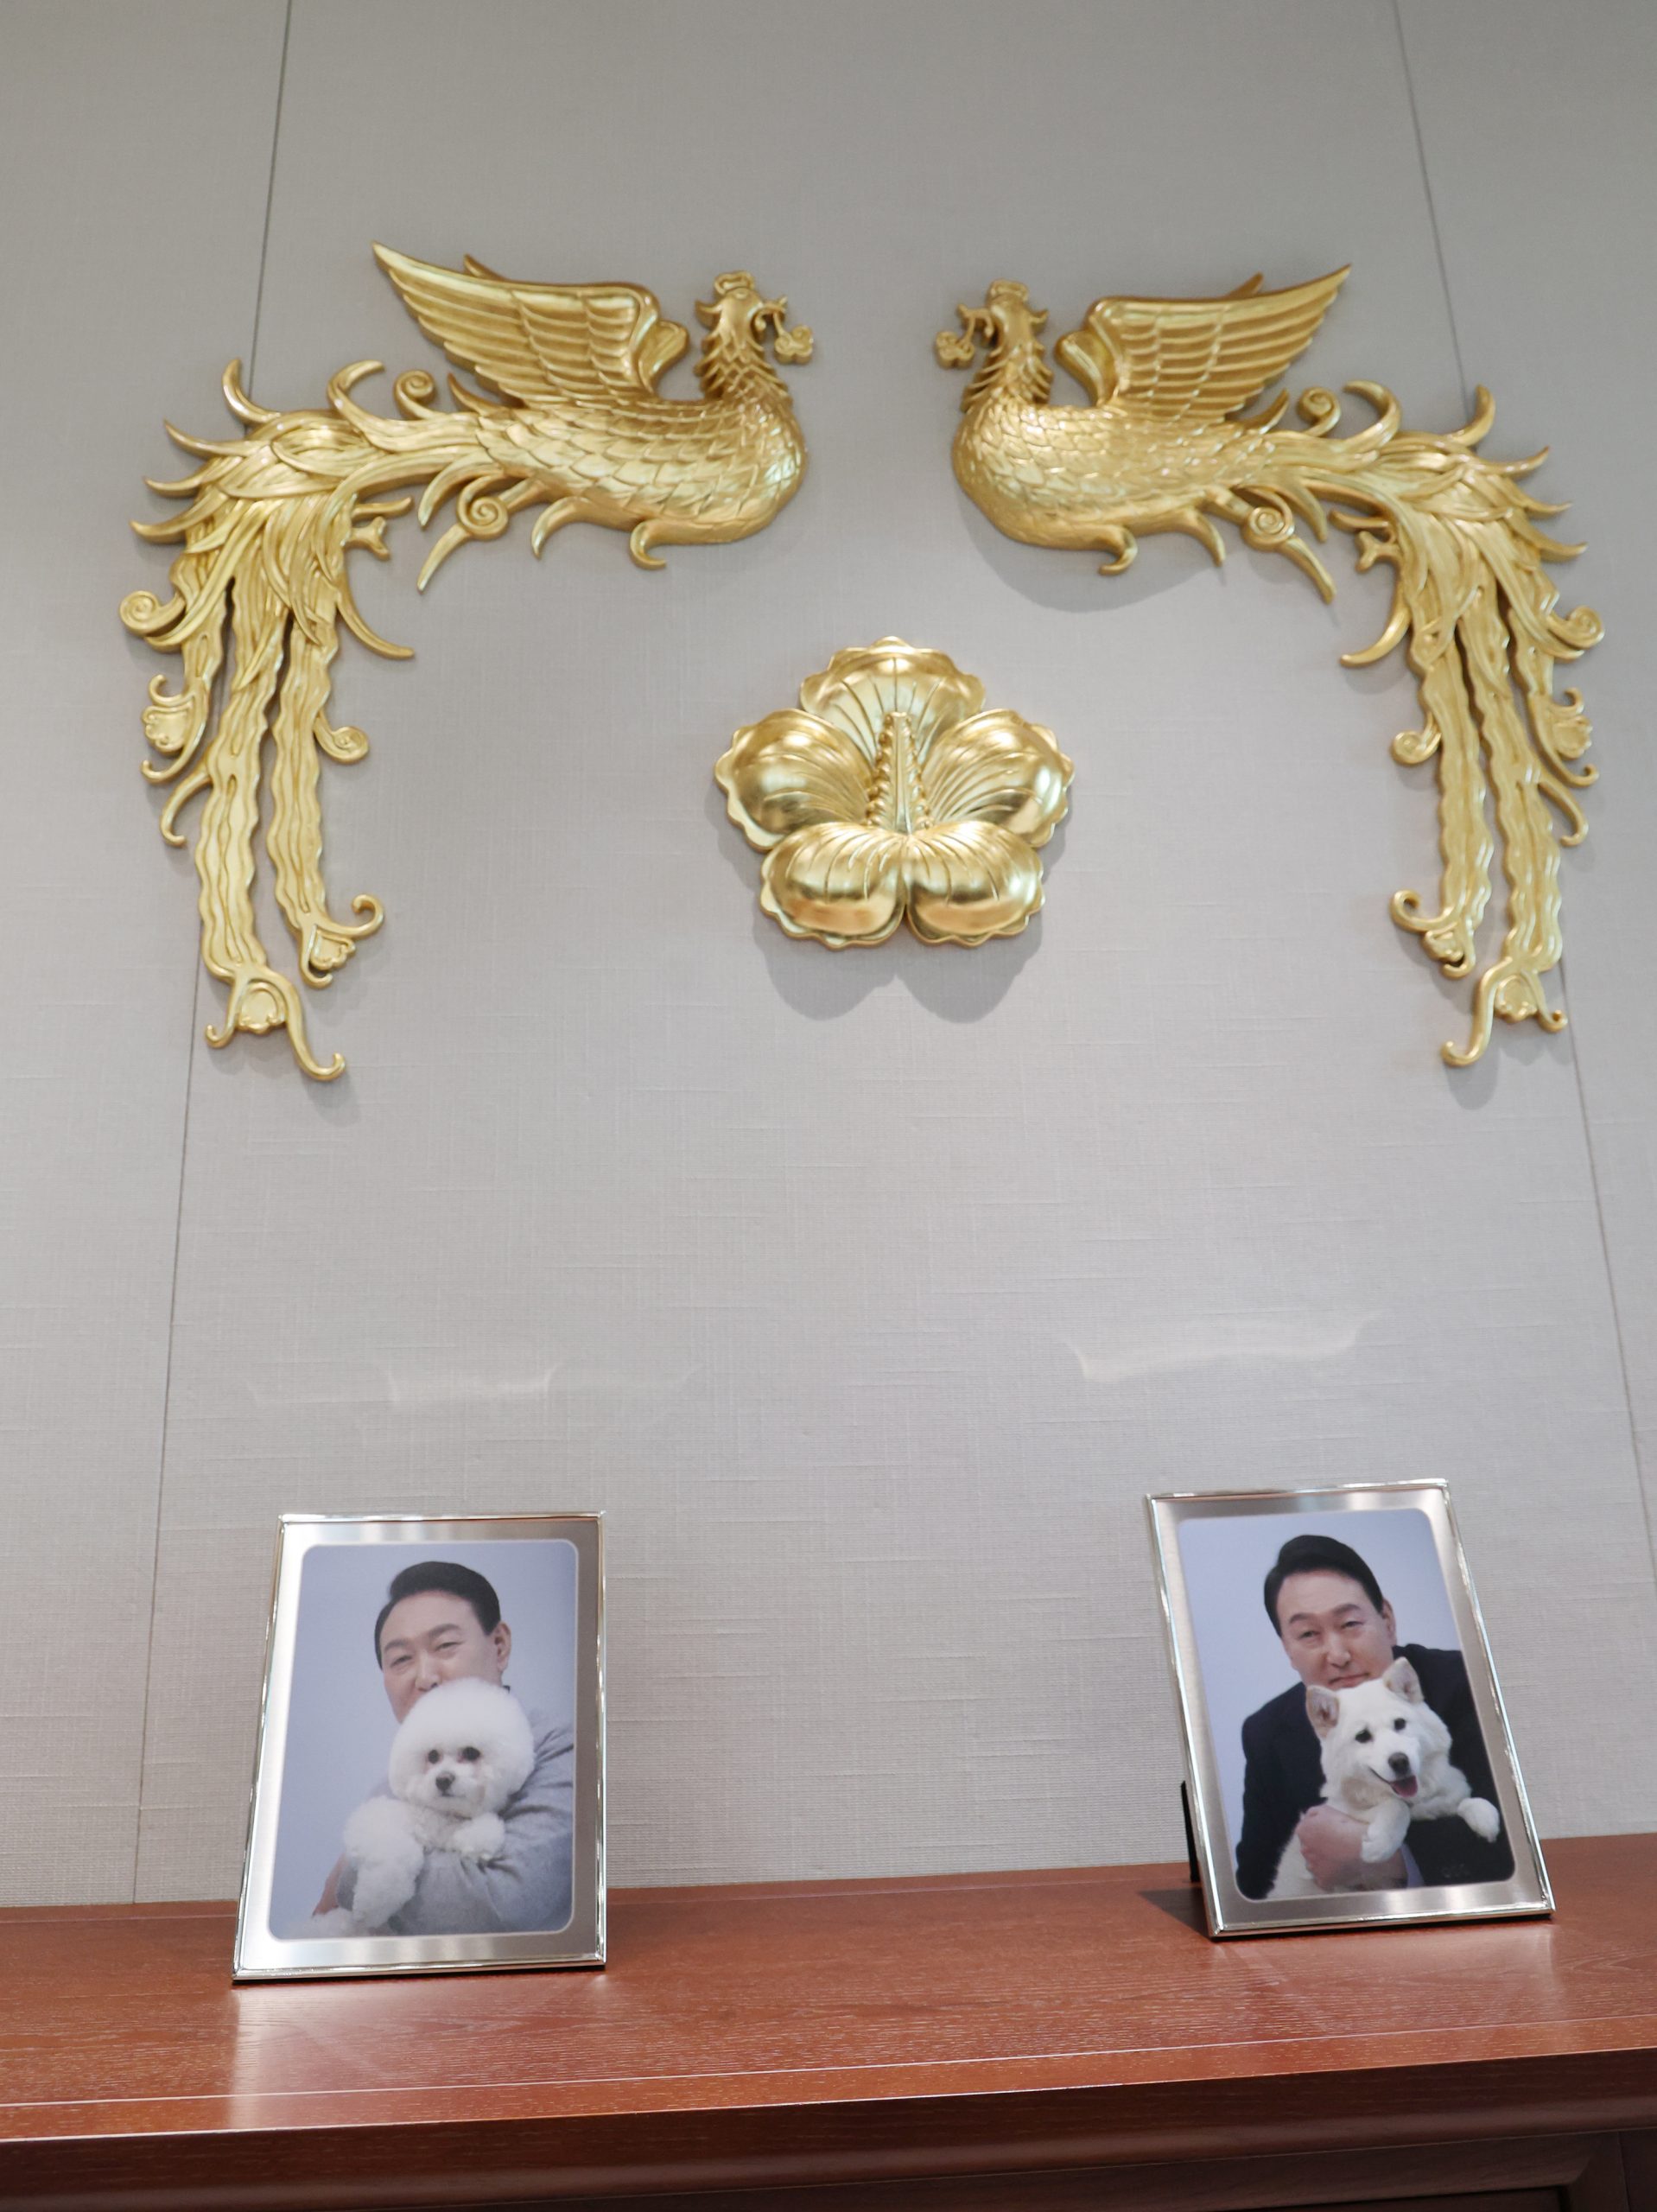 膝下无儿无女  韩新总统办公室桌上拍自己与爱犬合照